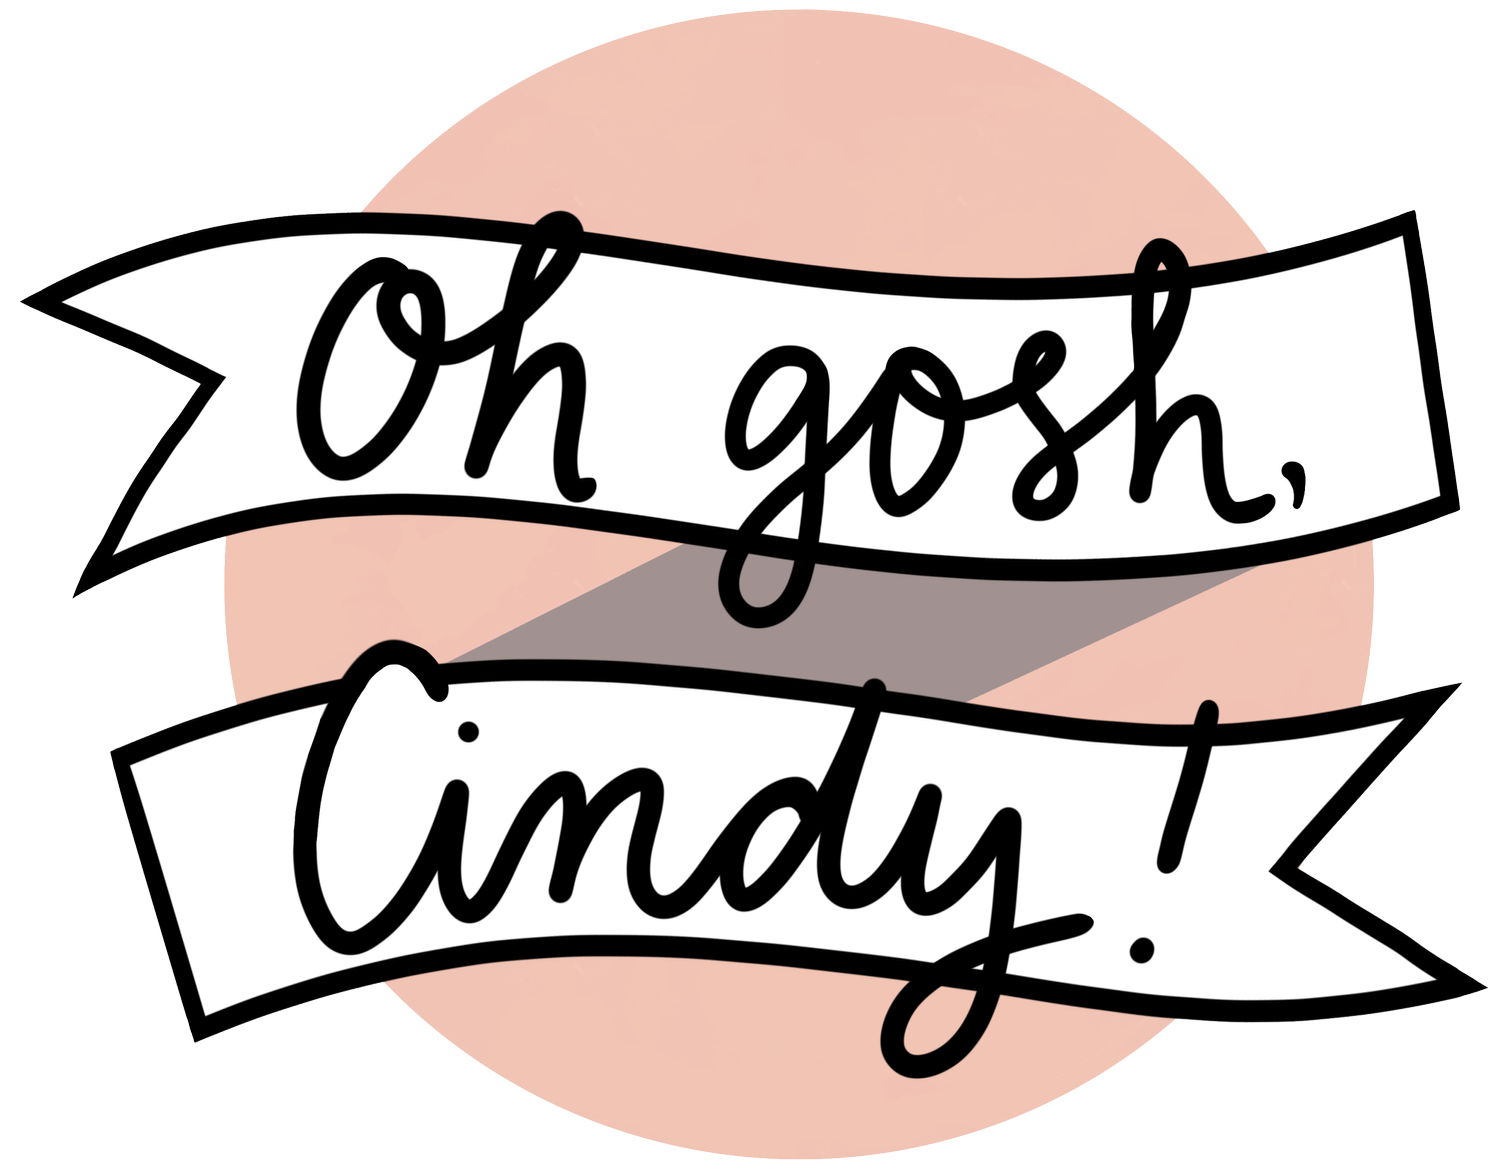 Oh gosh, Cindy!